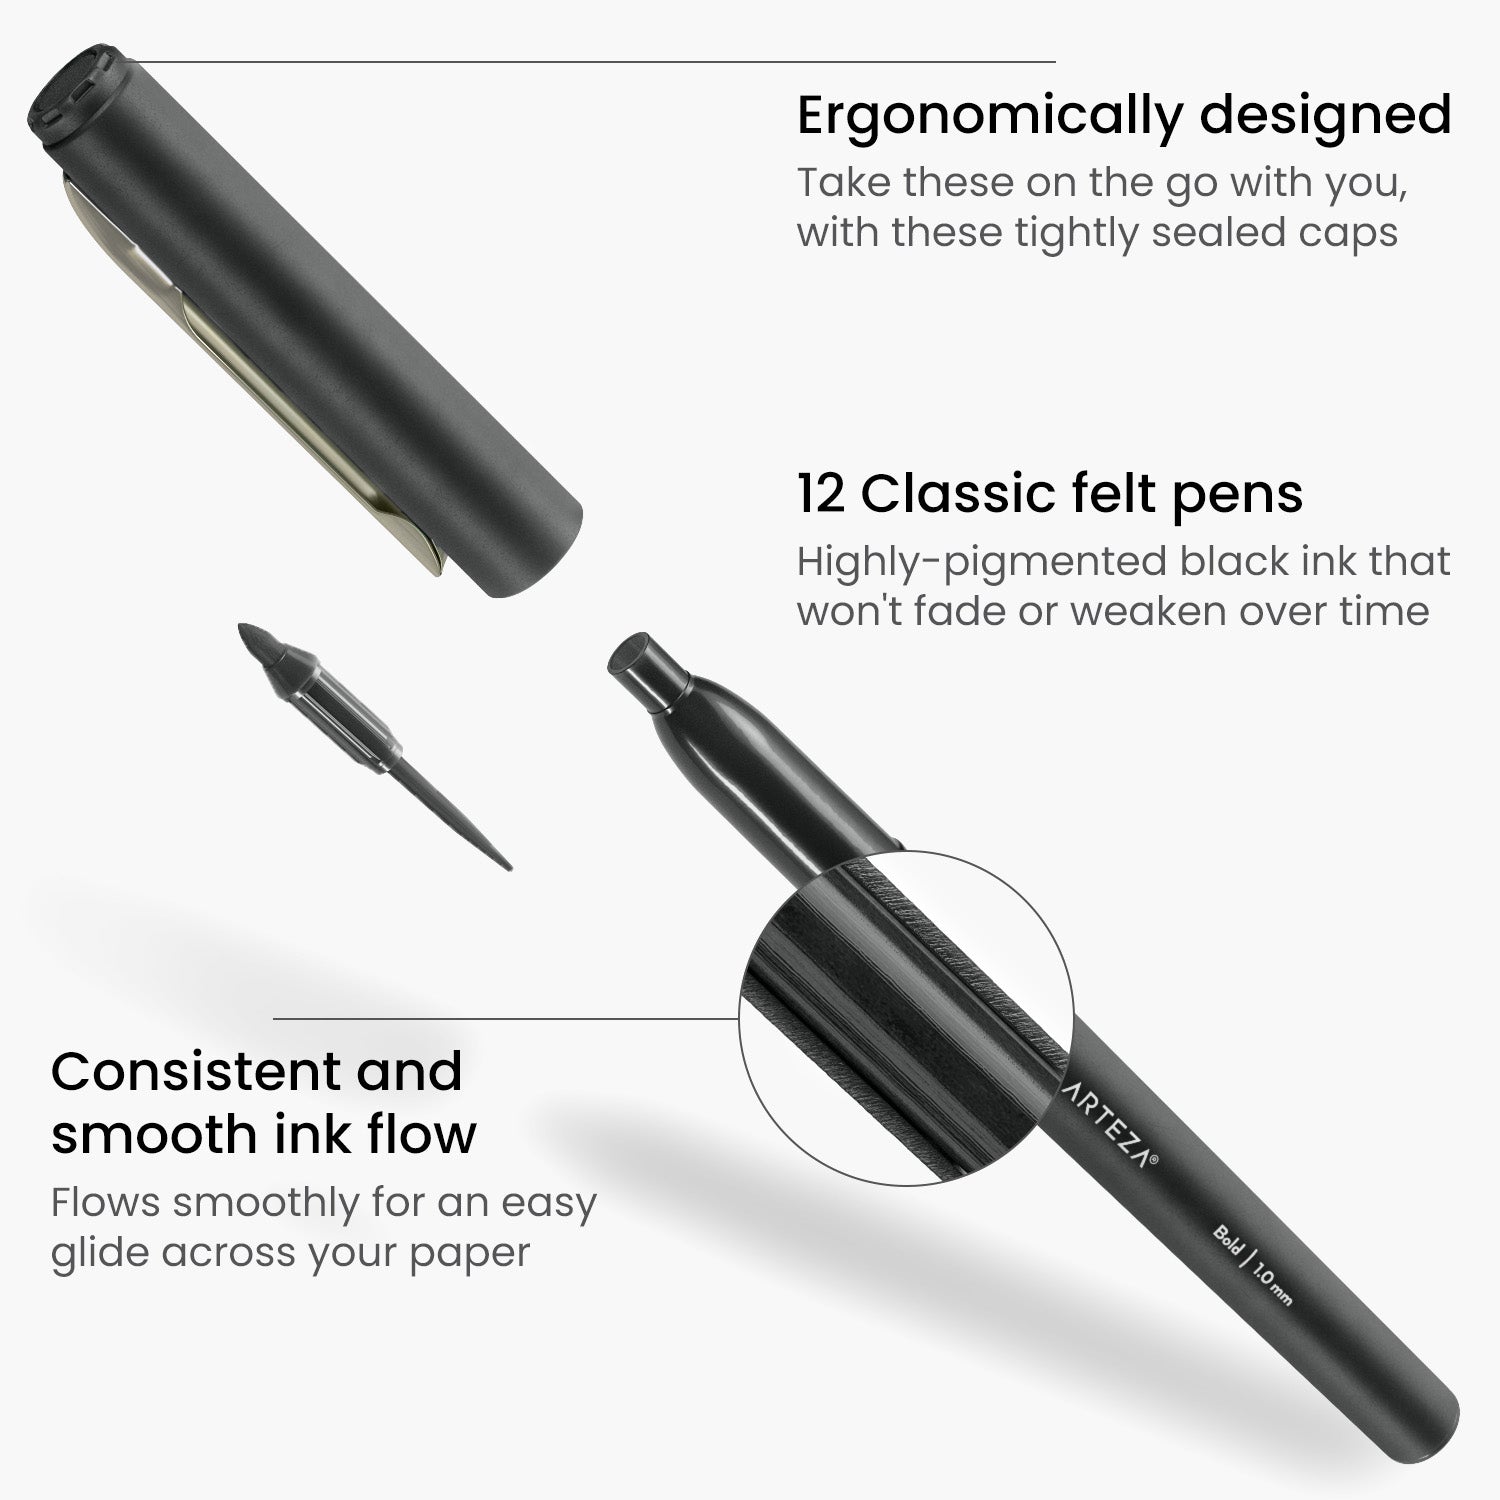 https://arteza.com/cdn/shop/products/classic-felt-pens-black-fiber-tip-set-of-12_iN2Vaqrj.jpg?v=1652894147&width=1946